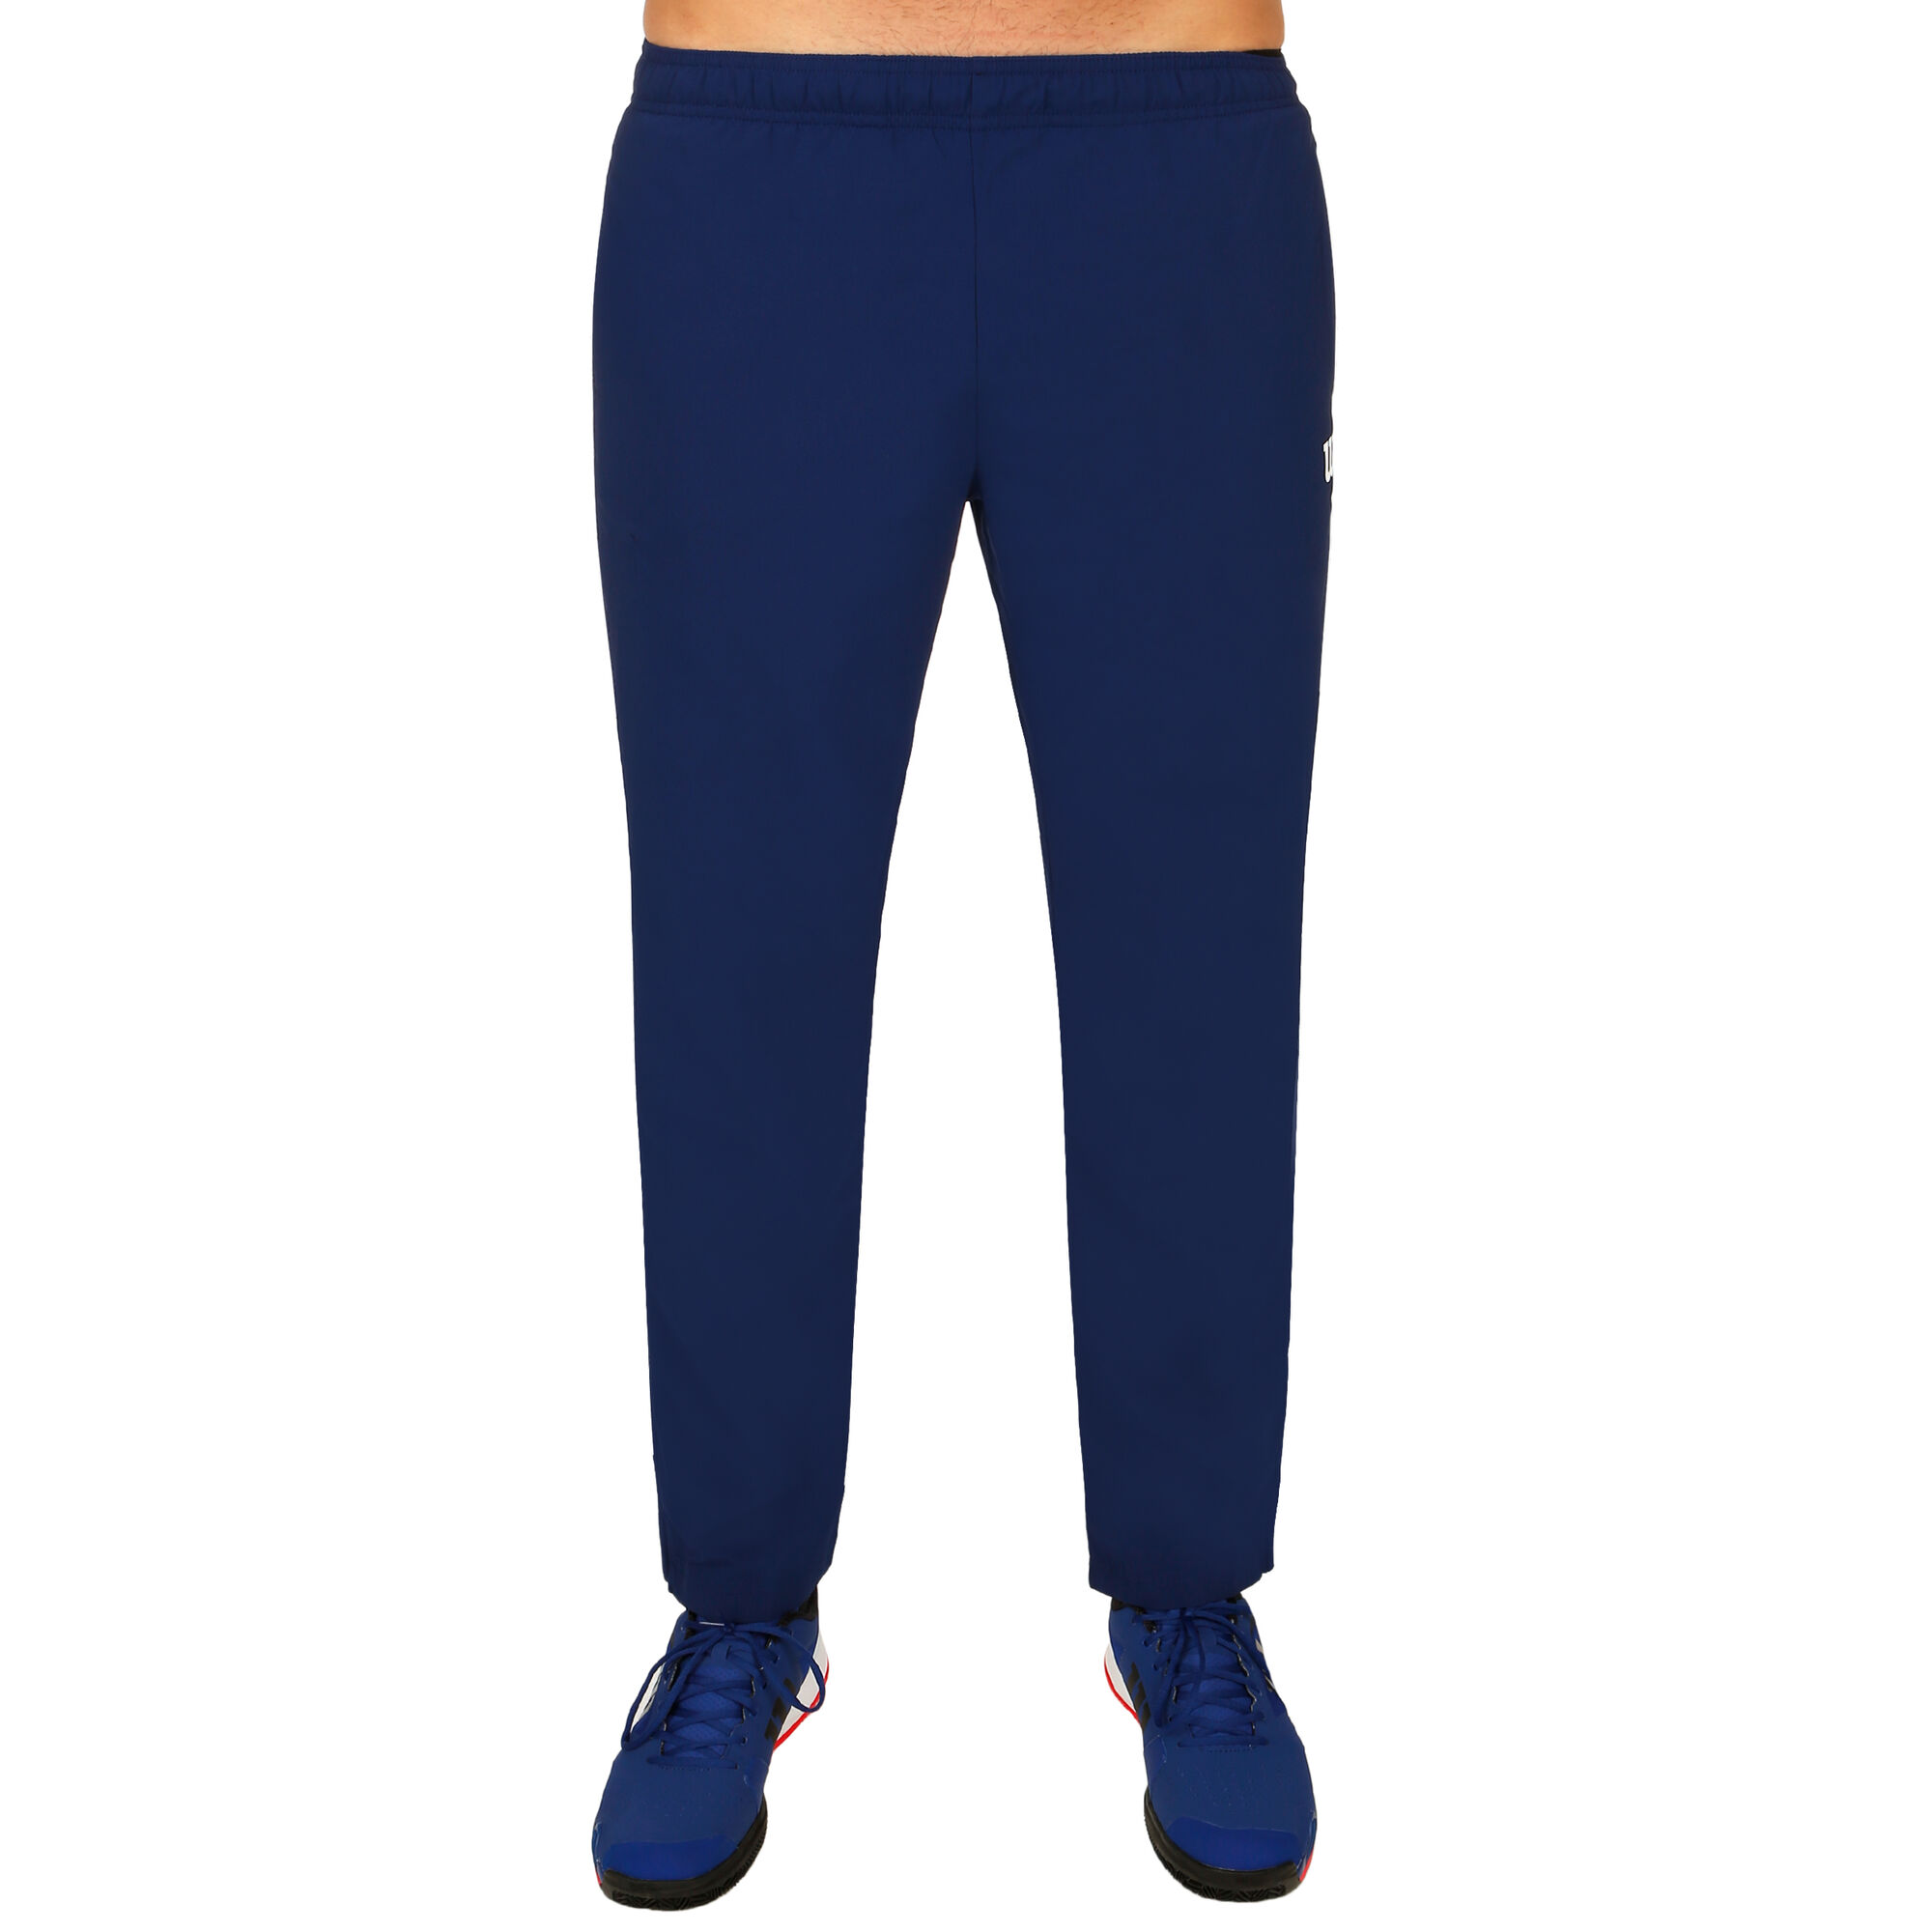 buy Wilson Team Woven Training Pants Men - Dark Blue, White online ...